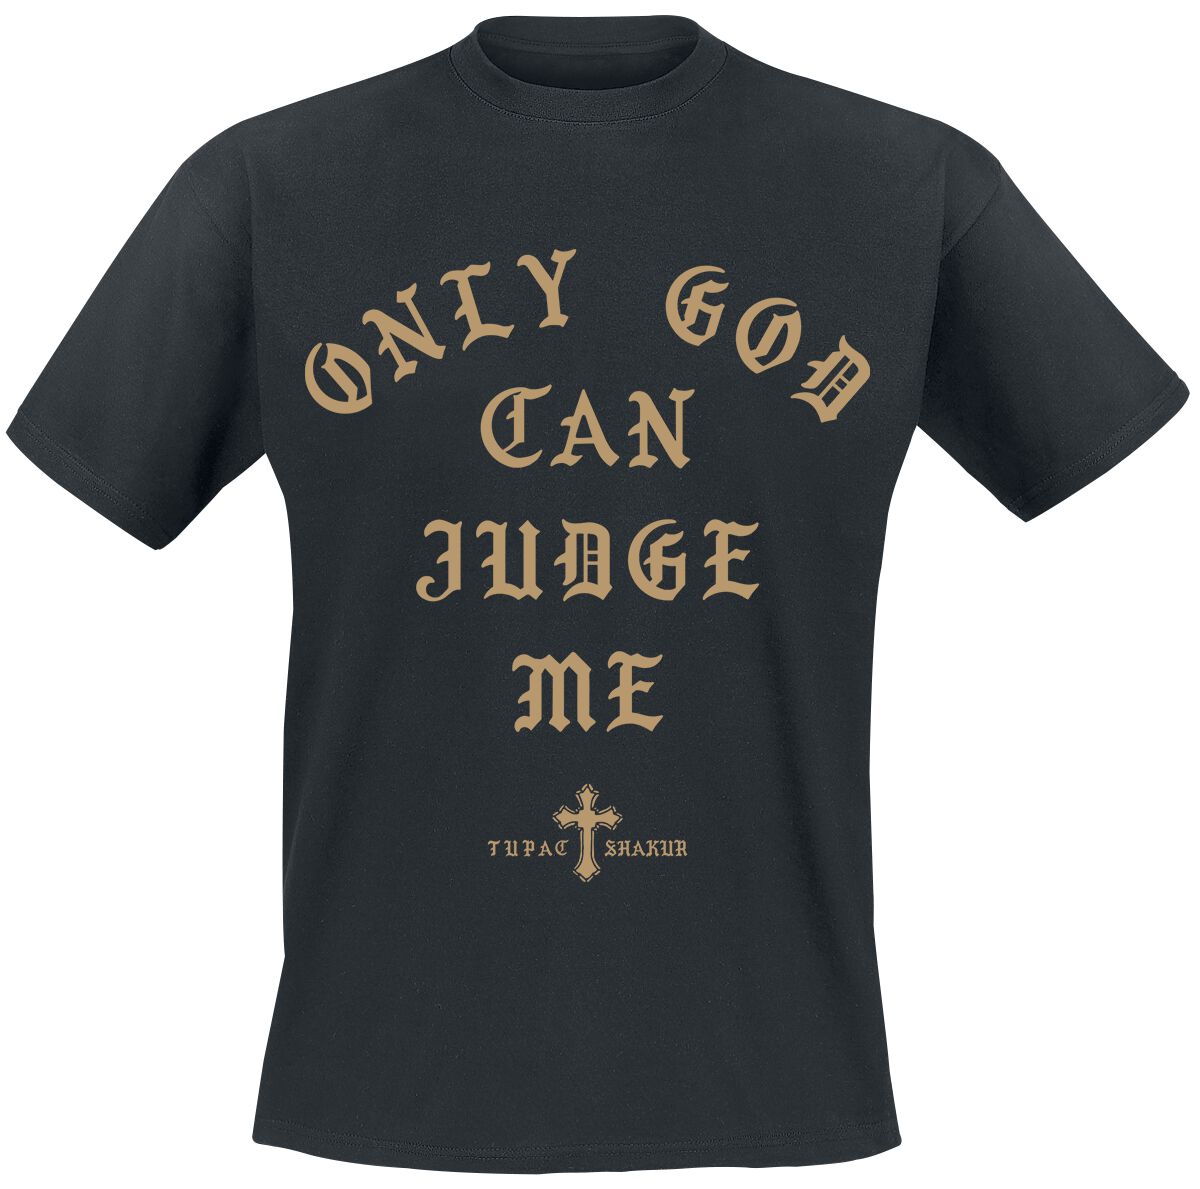 Tupac Shakur T-Shirt - Only God can judge me - S - für Männer - Größe S - schwarz  - Lizenziertes Merchandise!